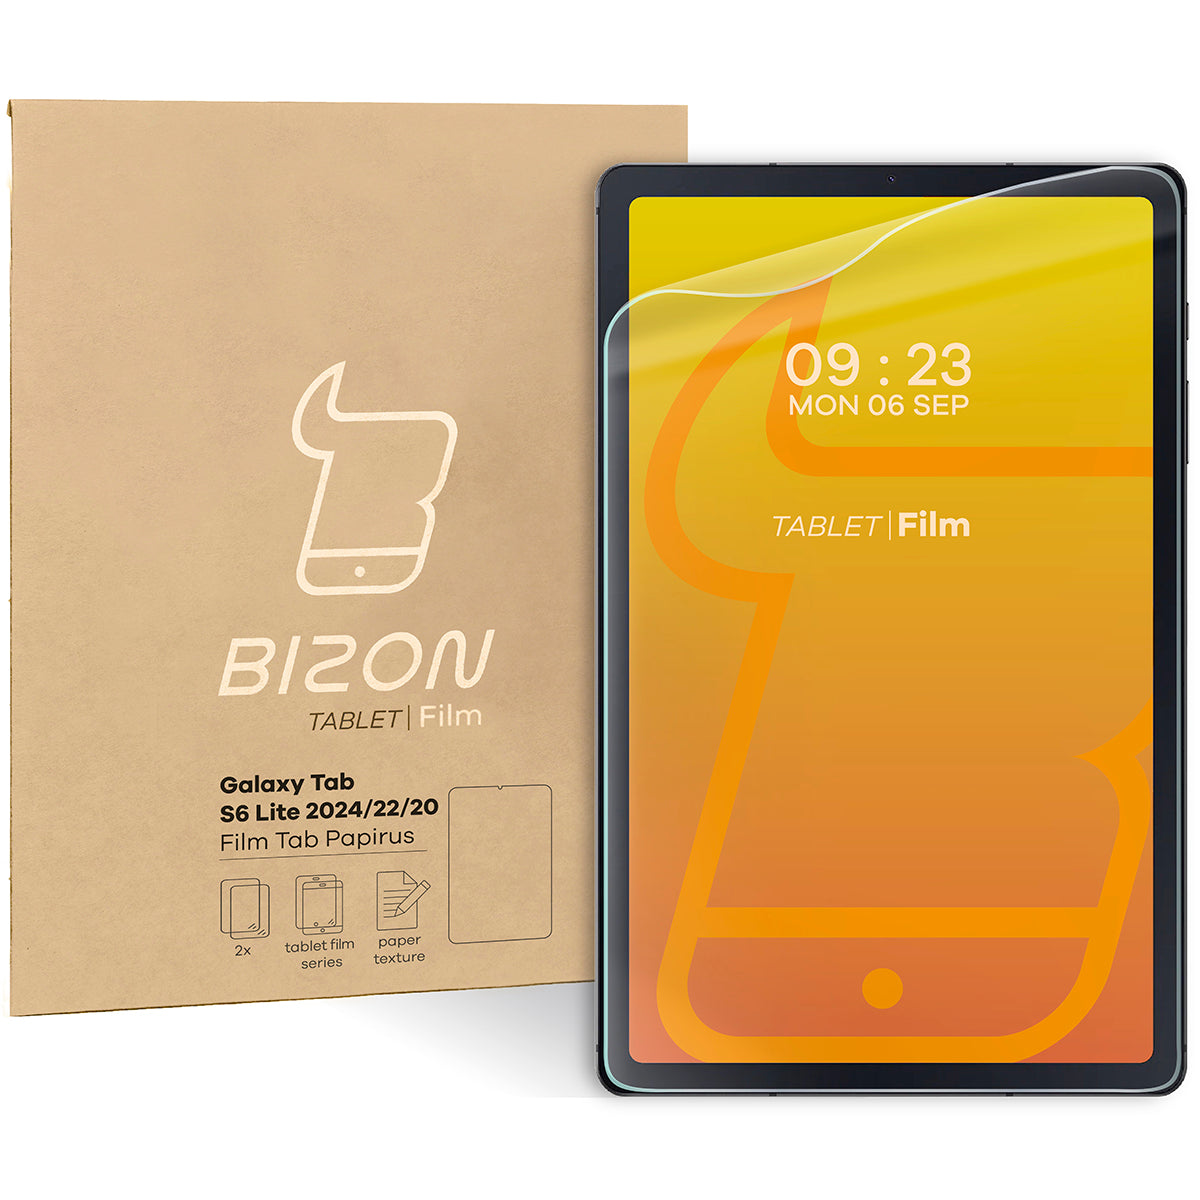 Papierimitationsfolie für Galaxy Tab S6 Lite 2024/2022/2020, Bizon Film Tab Papirus, 2 Stück